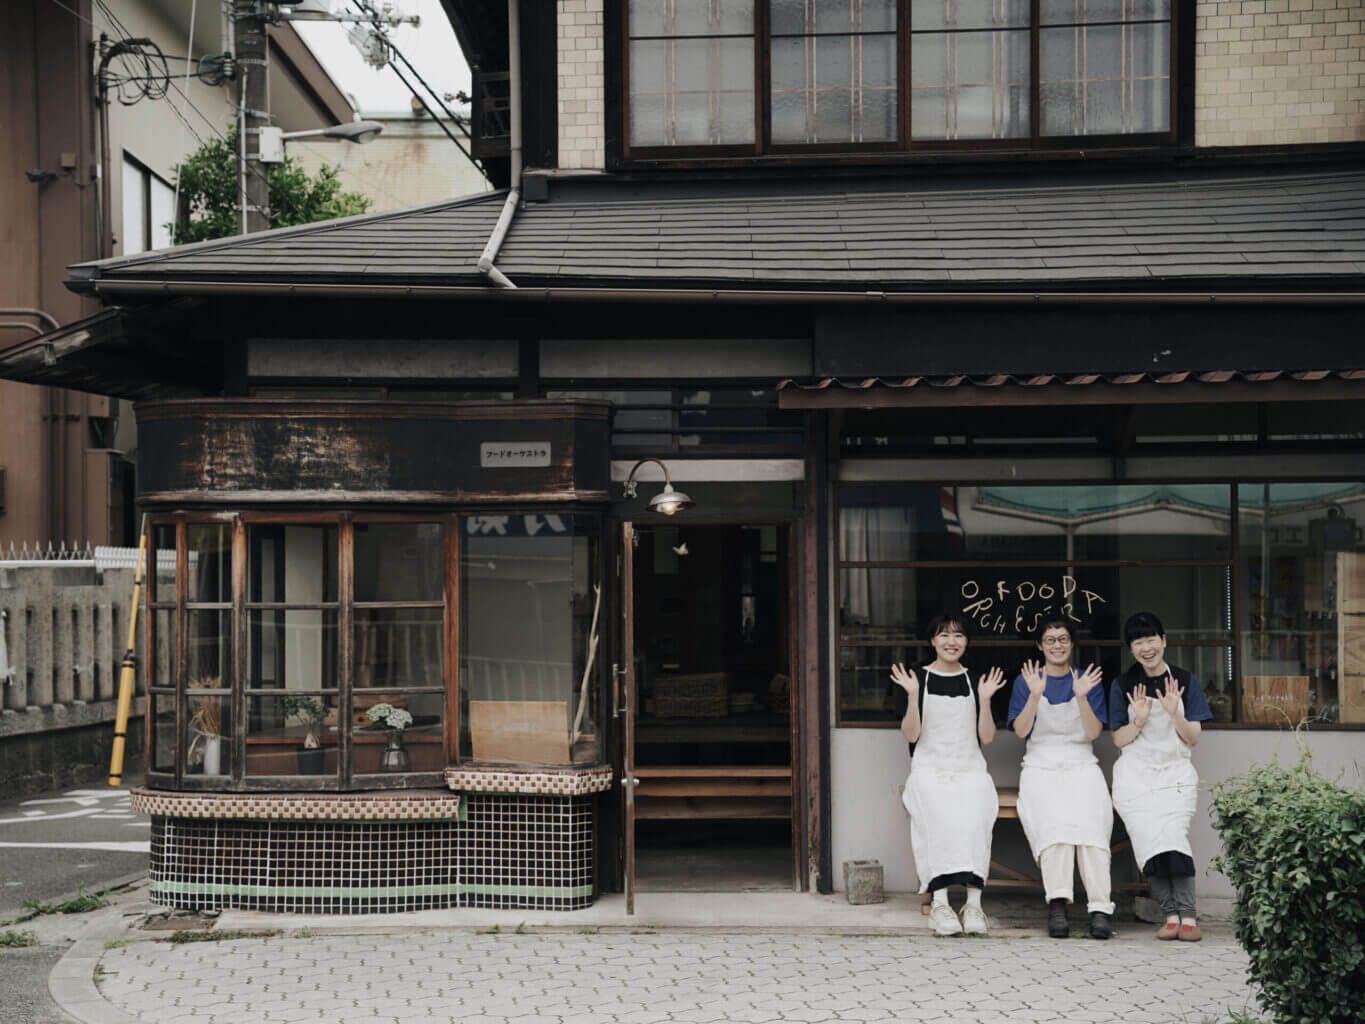 “安心できる、おいしい食品”を選りすぐって提供するオンラインストア「FOOD ORCHESTRA」が、大阪・阿倍野に実店舗をオープン。